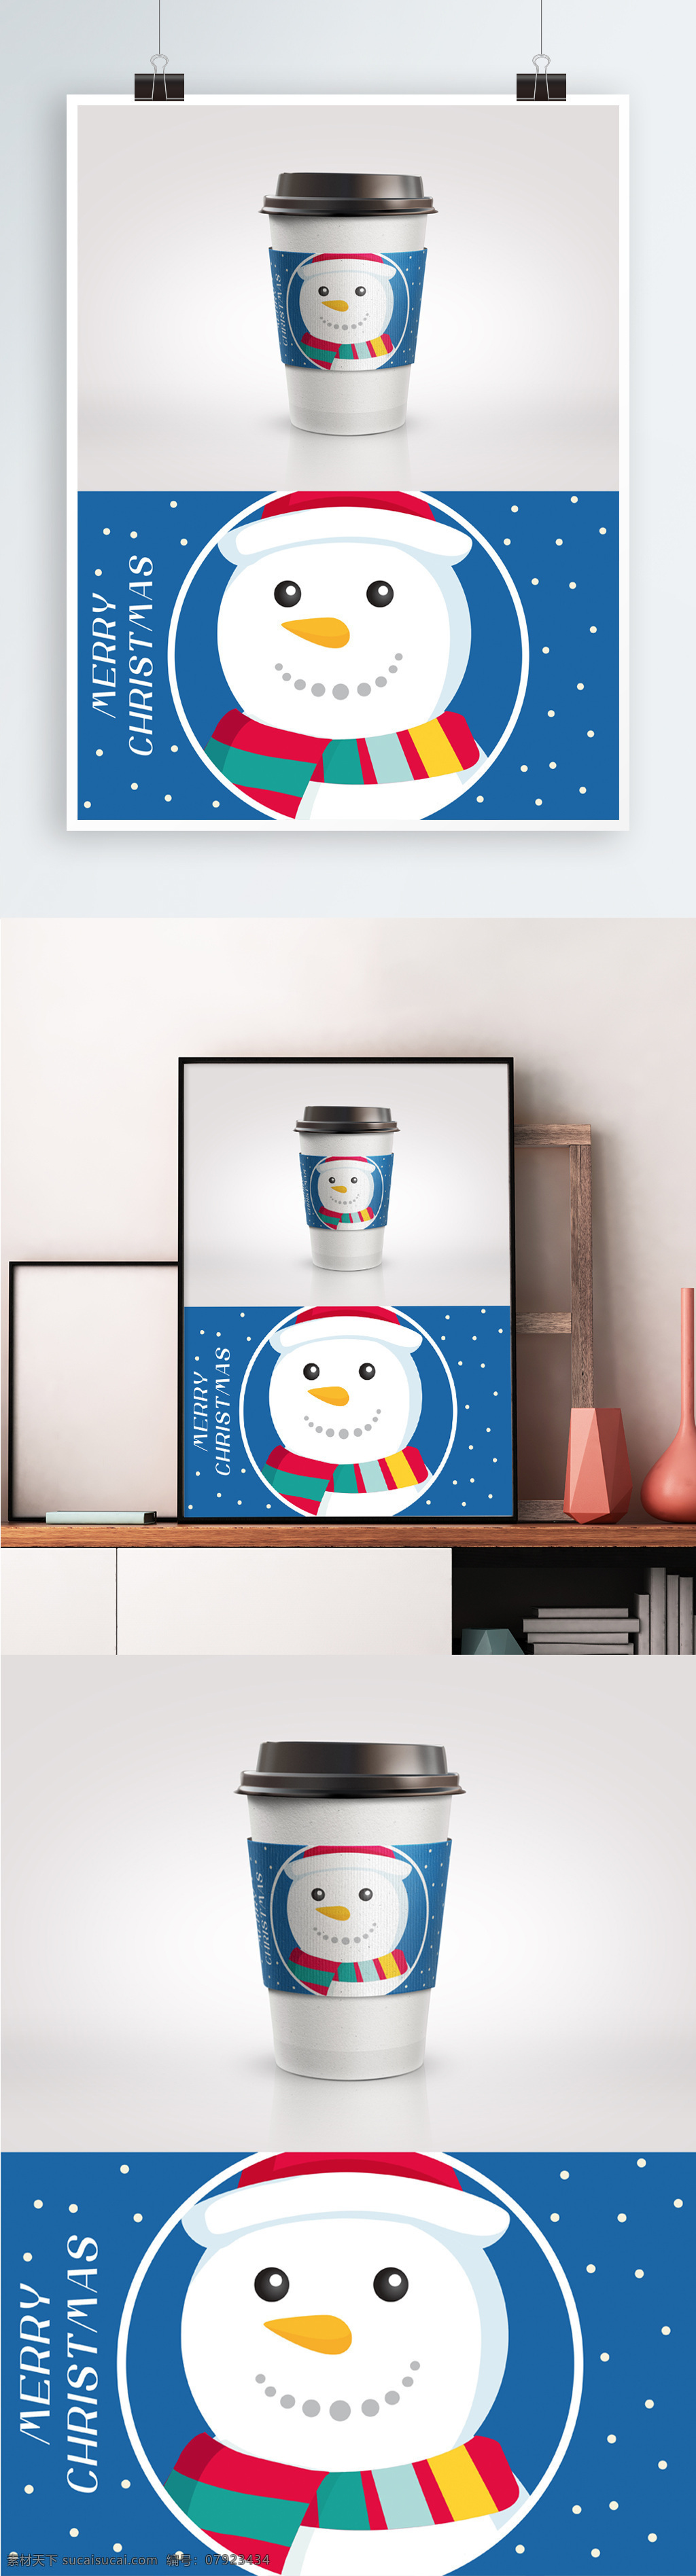 圣诞节 雪人 蓝色 可爱 咖啡 杯杯 套 杯套 简约 咖啡杯 雪 雪花